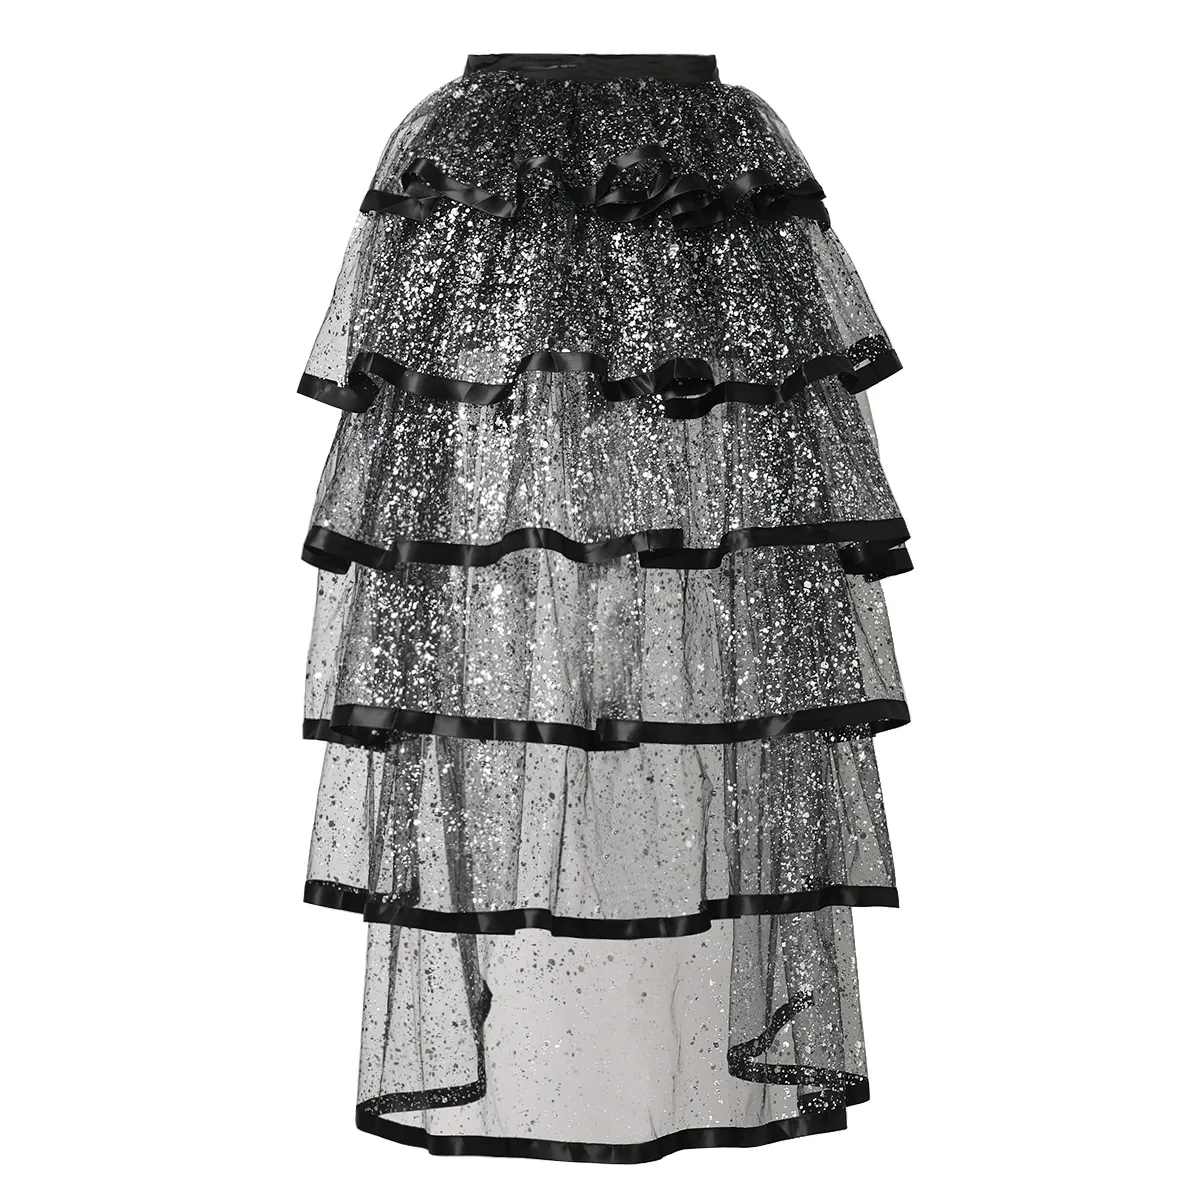 Falda burlesca victoriana, disfraz temático, sobrefaldas góticas steampunk punk